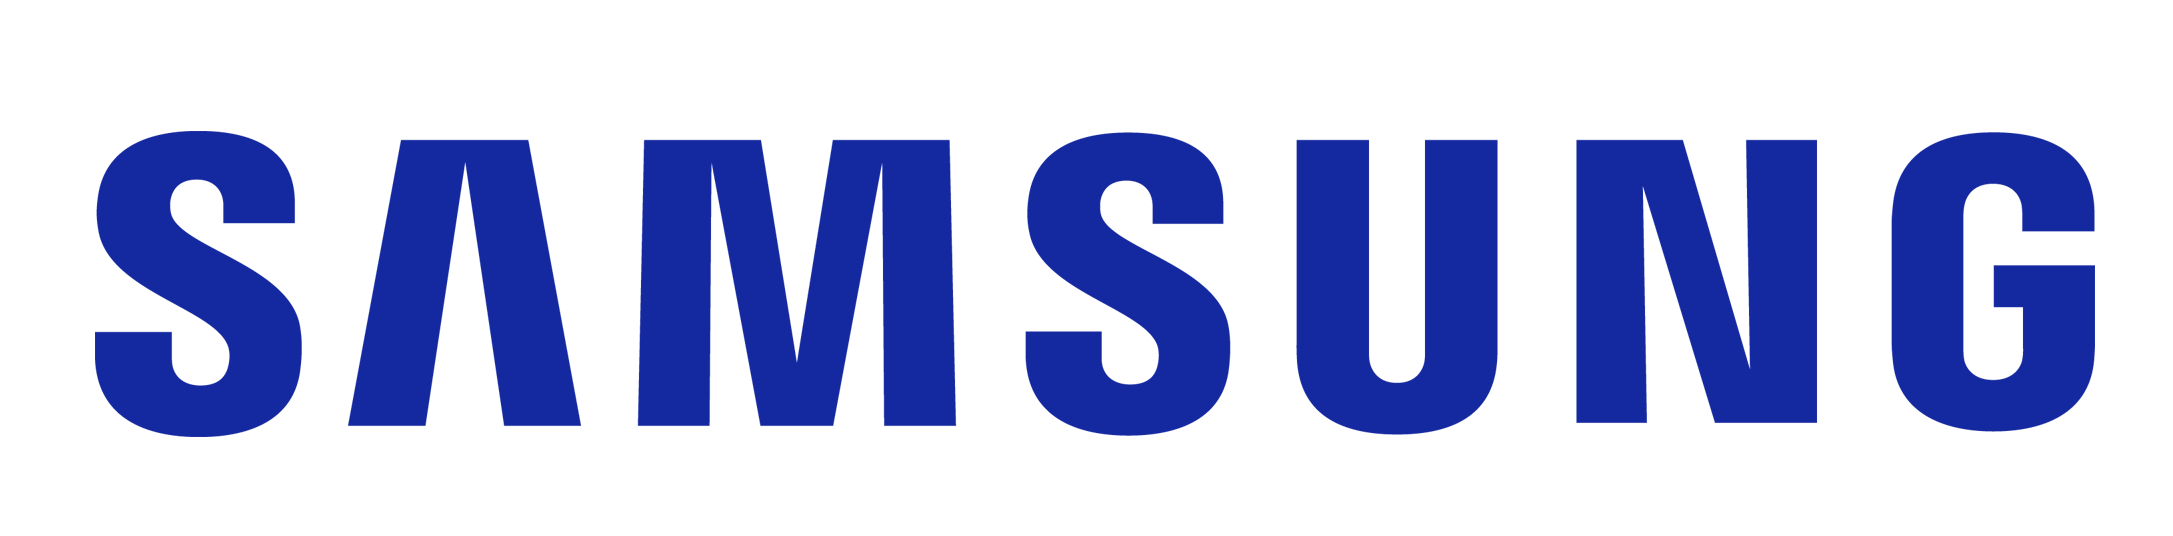 Kết quả hình ảnh cho Samsung monitor logo